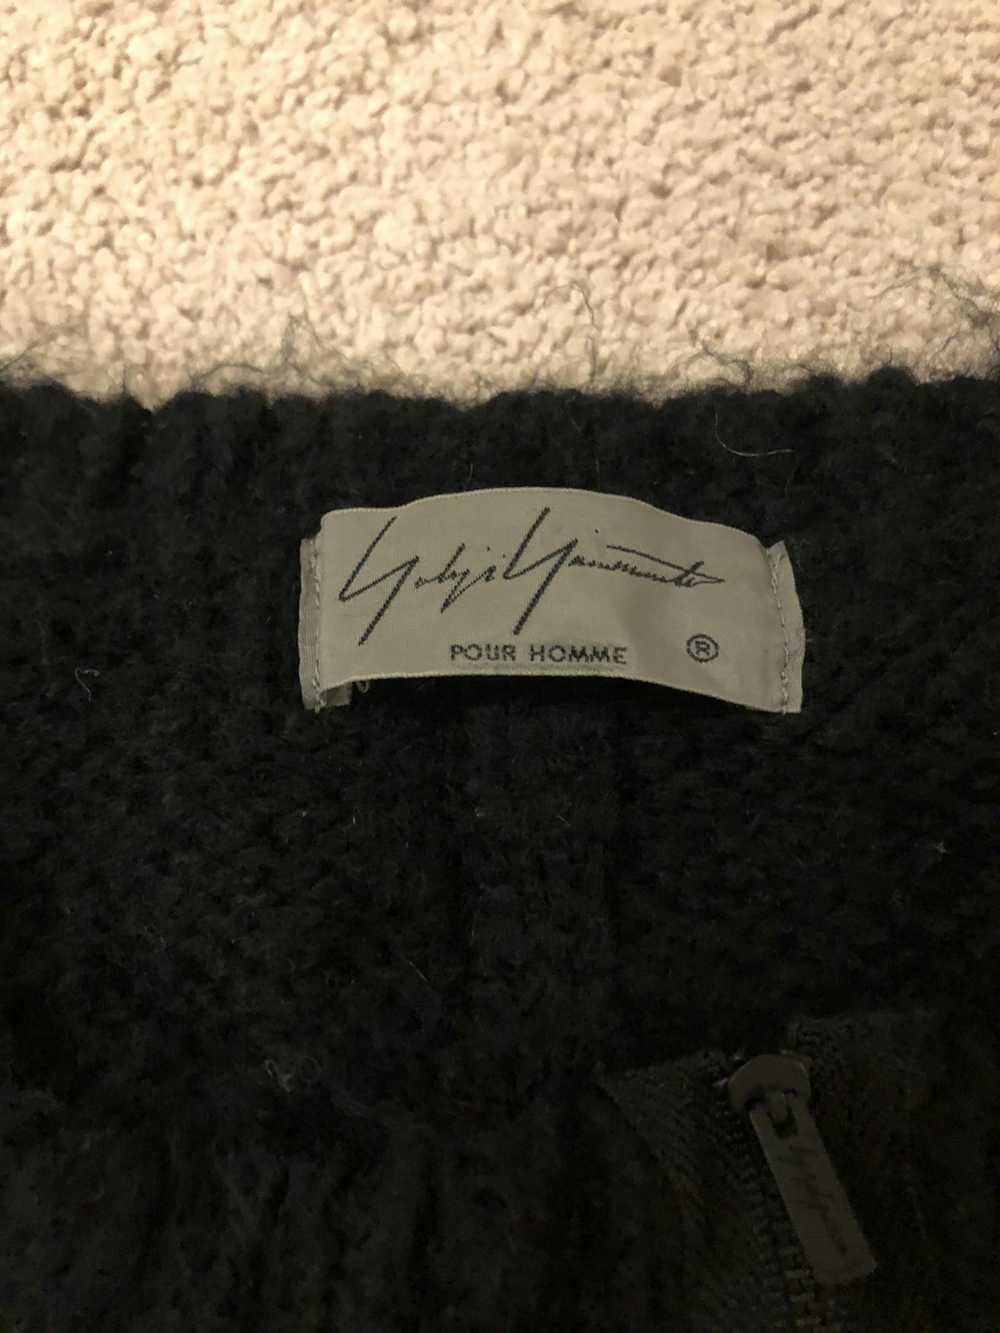 Yohji Yamamoto Pour Homme Knit Sweater - image 2